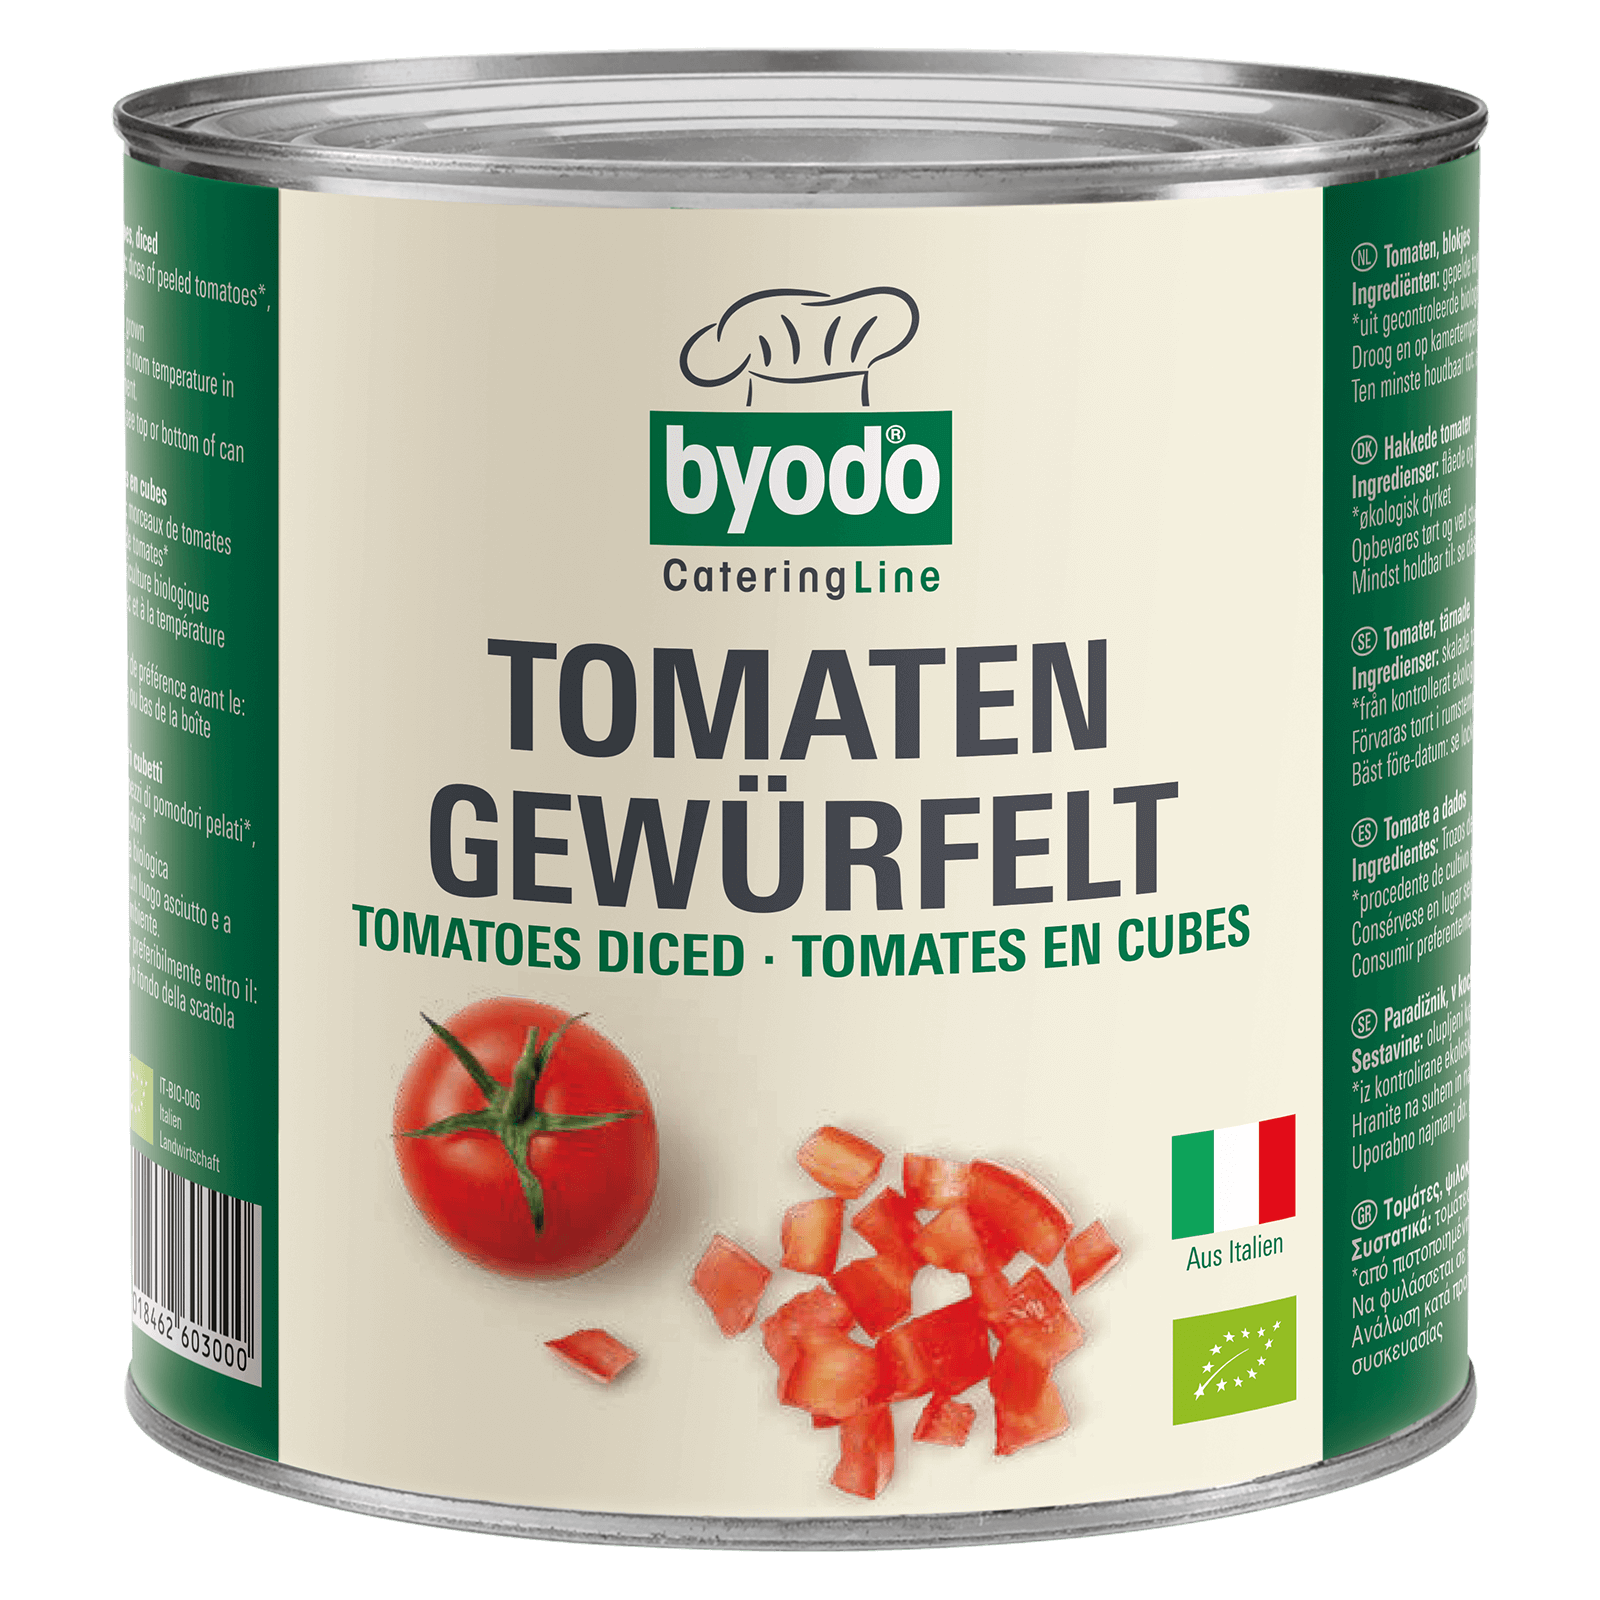 Bio-Tomaten gewuerfelt